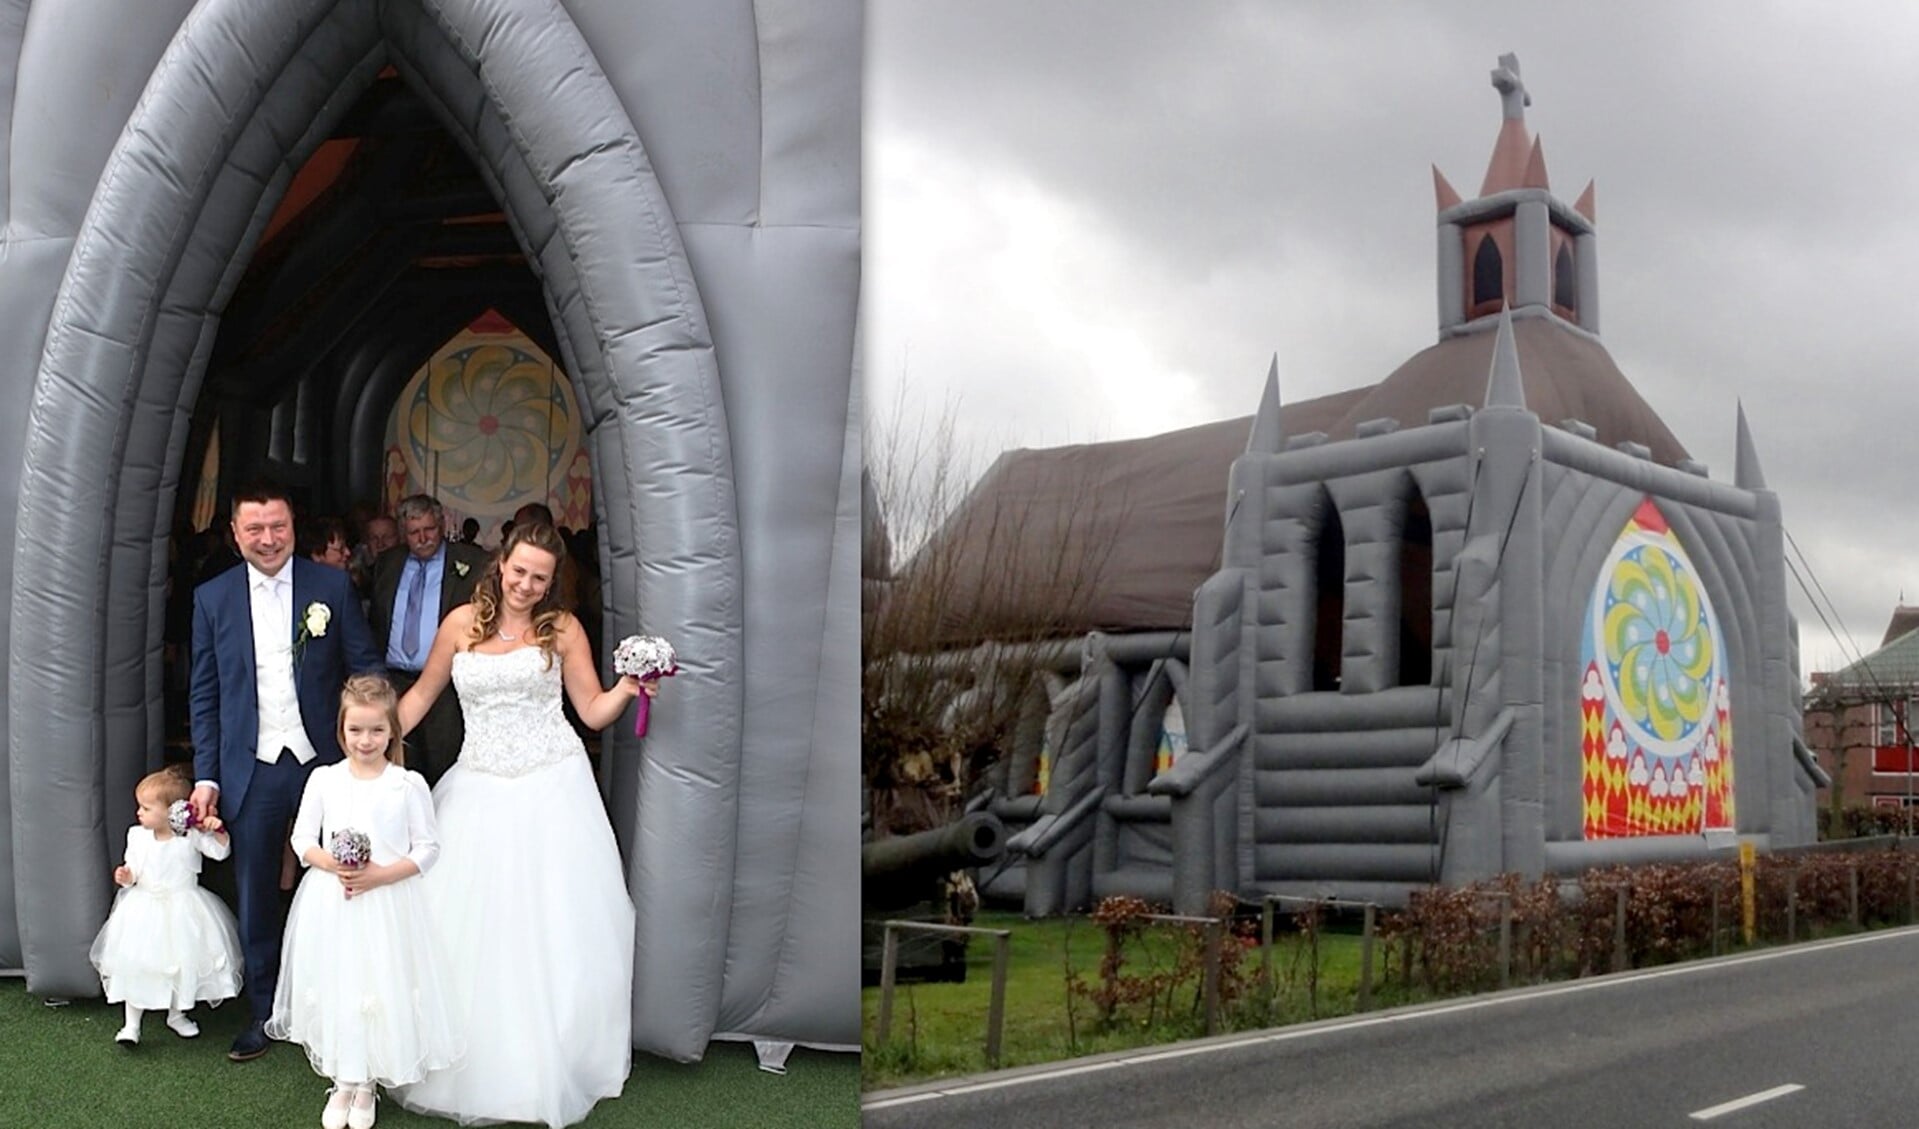 Het bruidspaar verlaat getrouwd de opblaasbare kerk die stond in de tuin van Hofstede Van den Honaert.